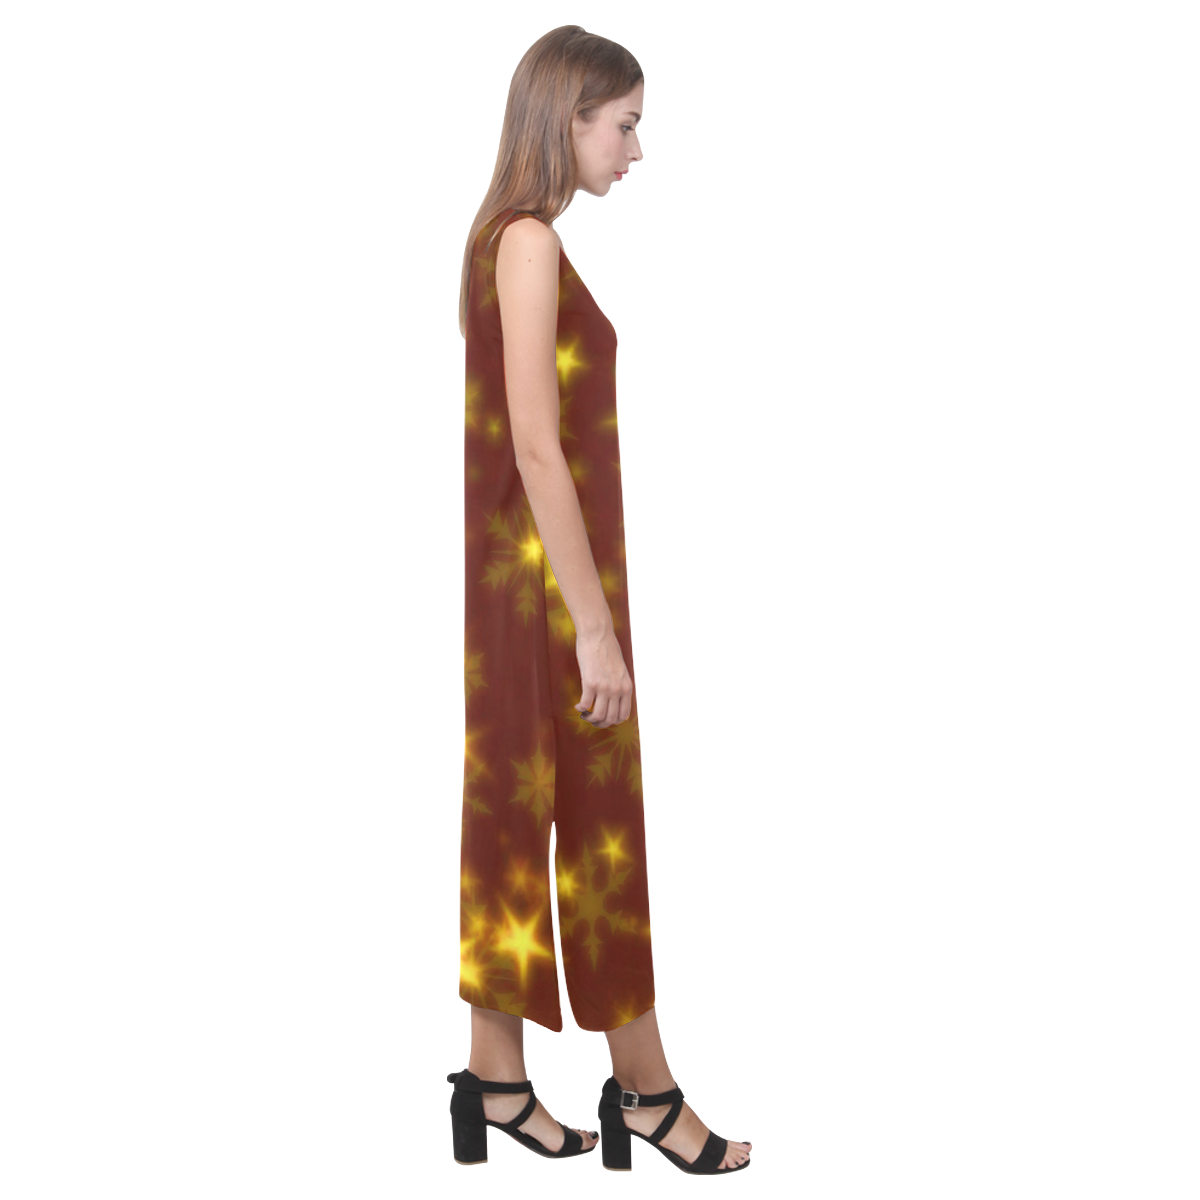 Blurry Stars golden by FeelGood Phaedra Sleeveless Open Fork Long Dress (Model D08)